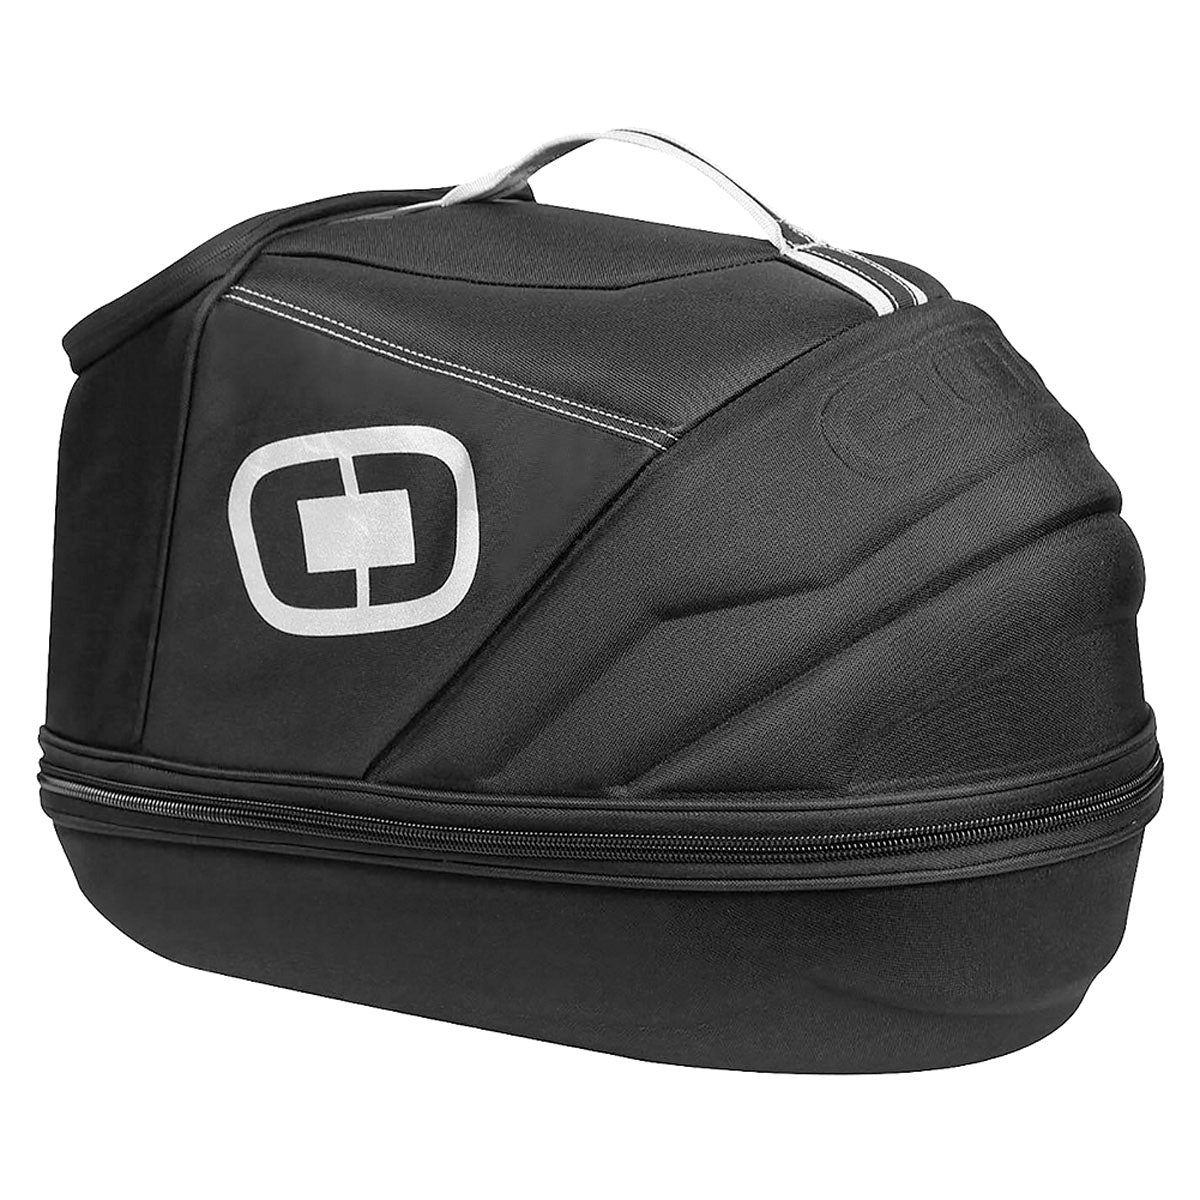 Ogio Helmet Case - ExtremeSupply.com